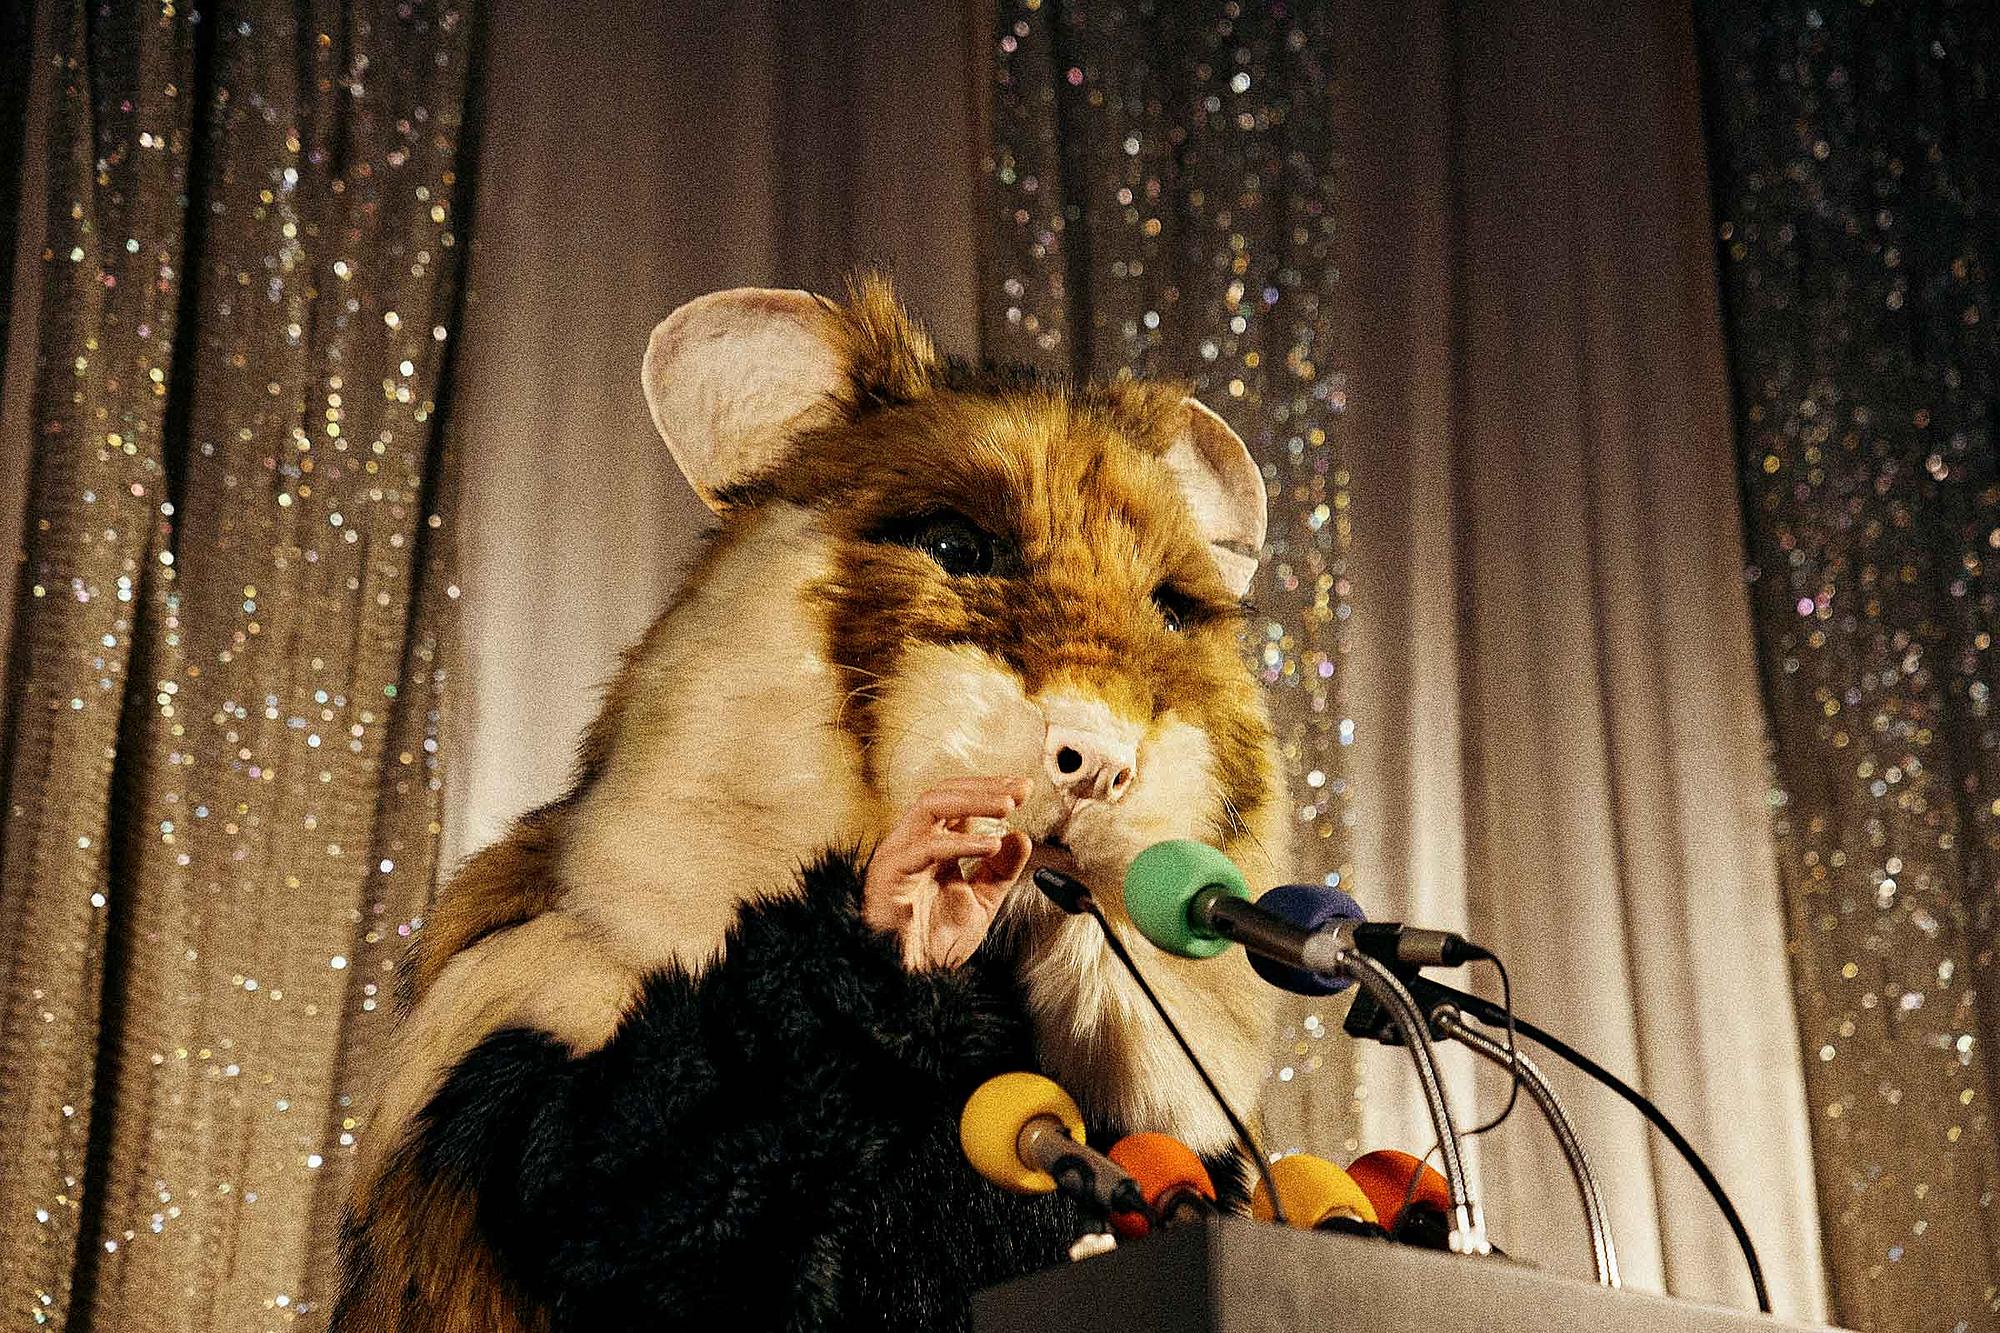 Mensch im Hamsterkostüm auf einer Bühne spricht in Mikros